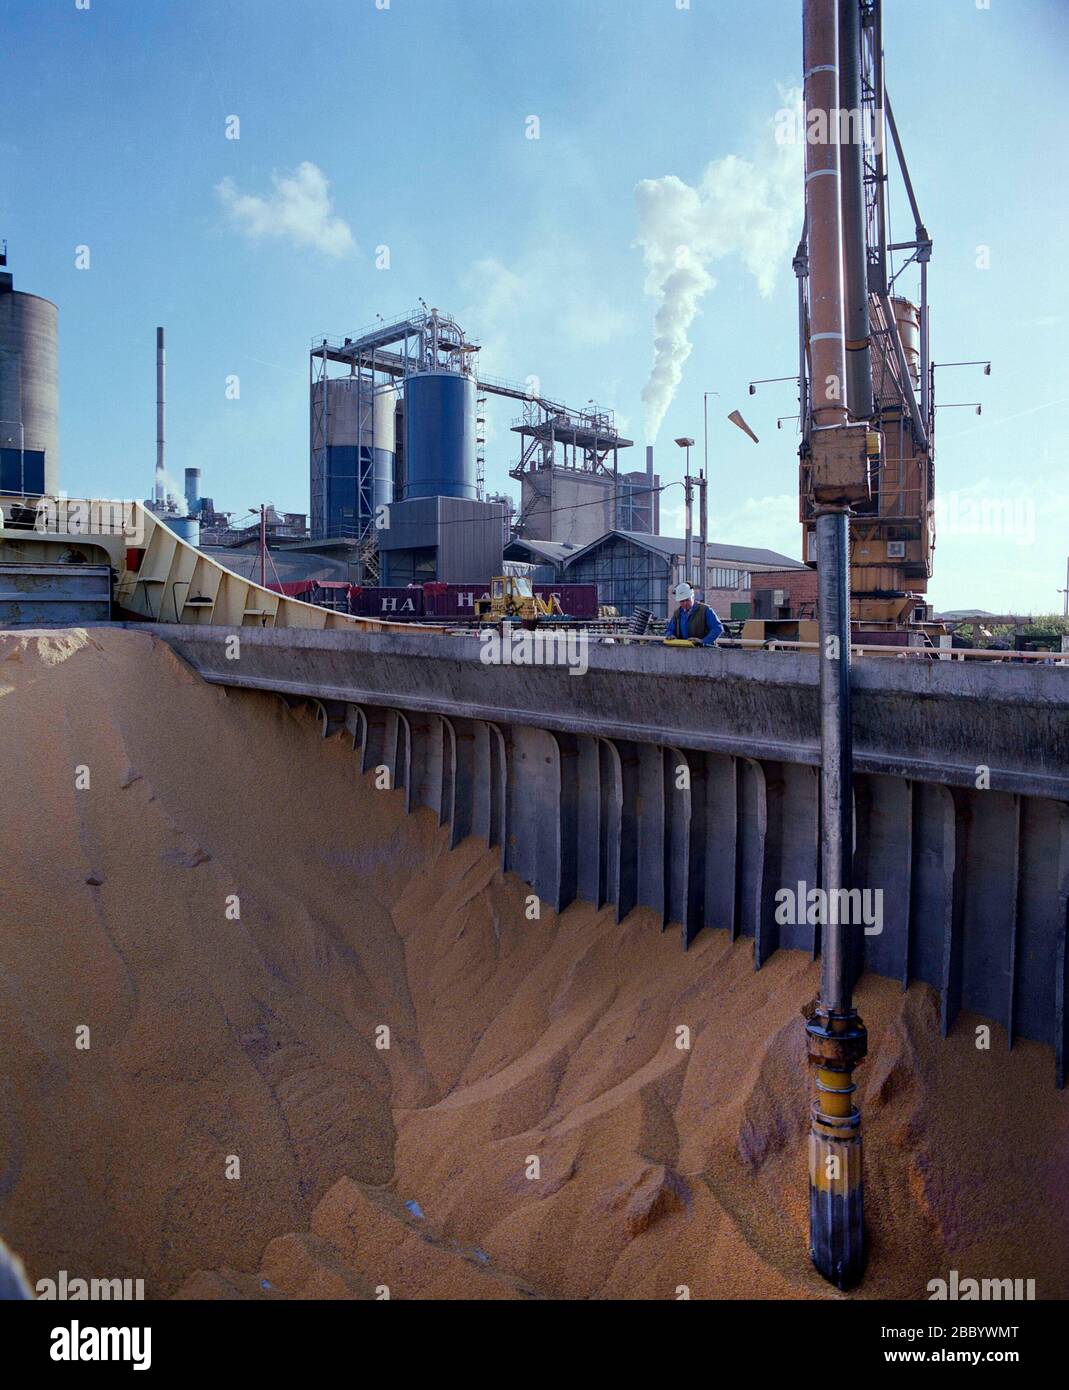 1988, Fabrik in Trafford Park, manchester, North West England, Großbritannien, das Getreide vom Schiff auf dem Schiffskanal ablädt Stockfoto